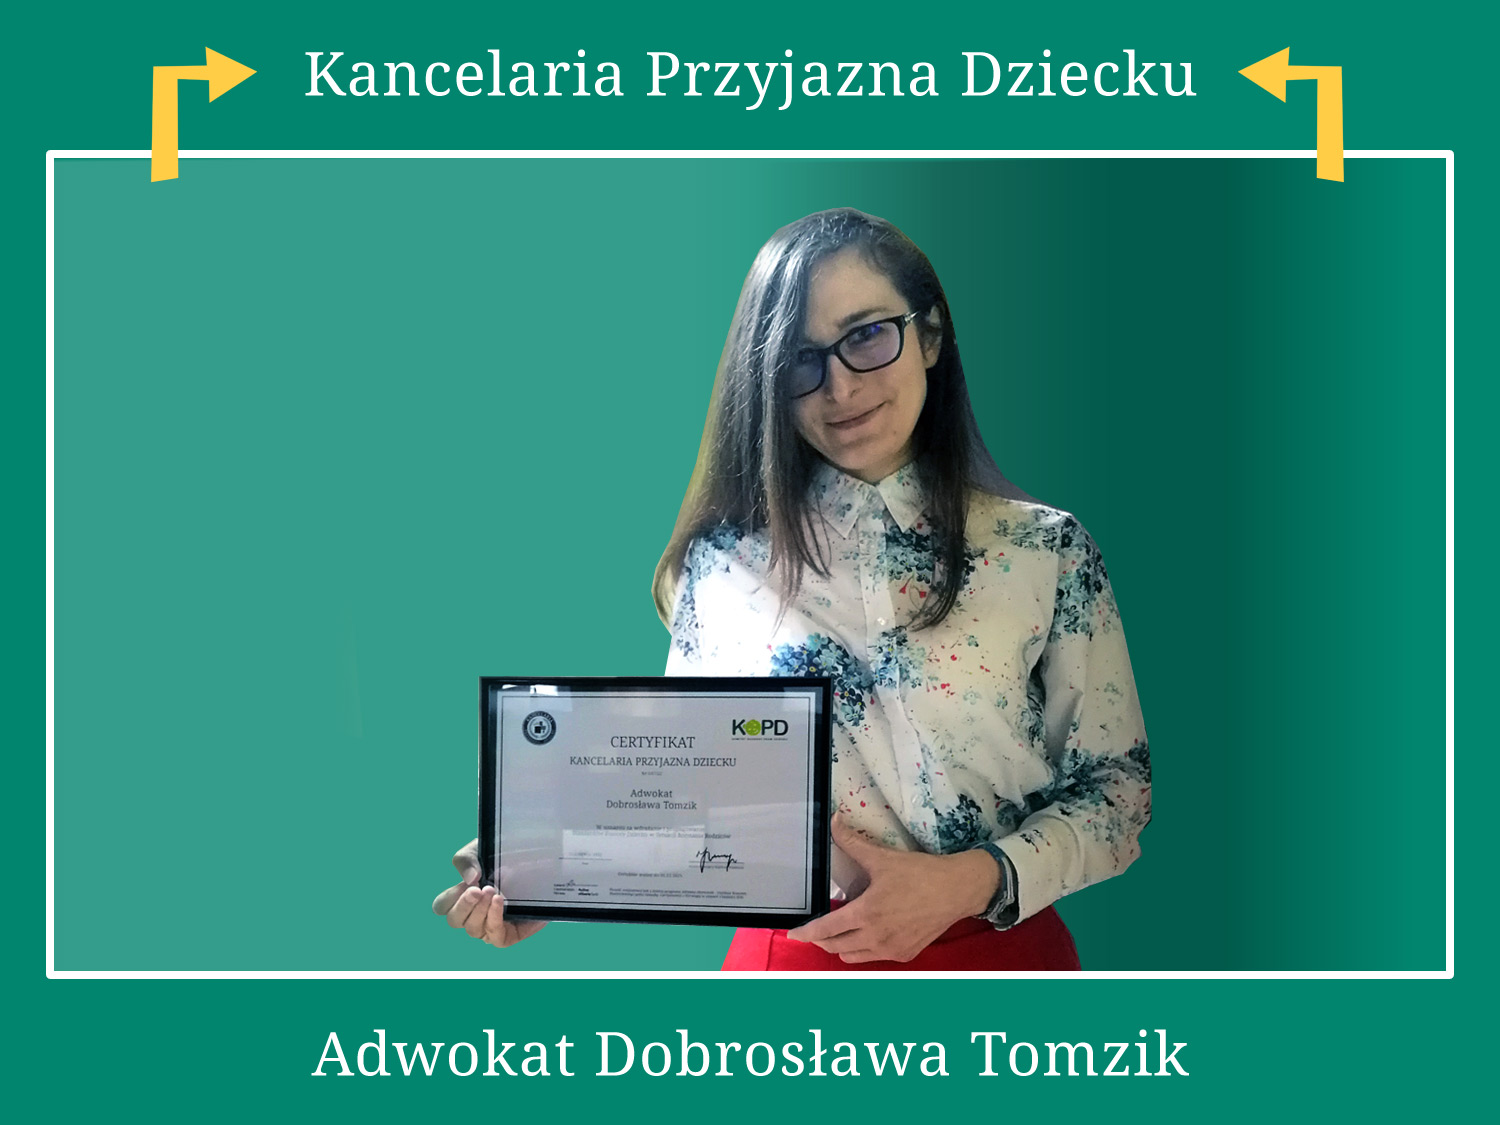 Dobrosława Tomzik Adwokat